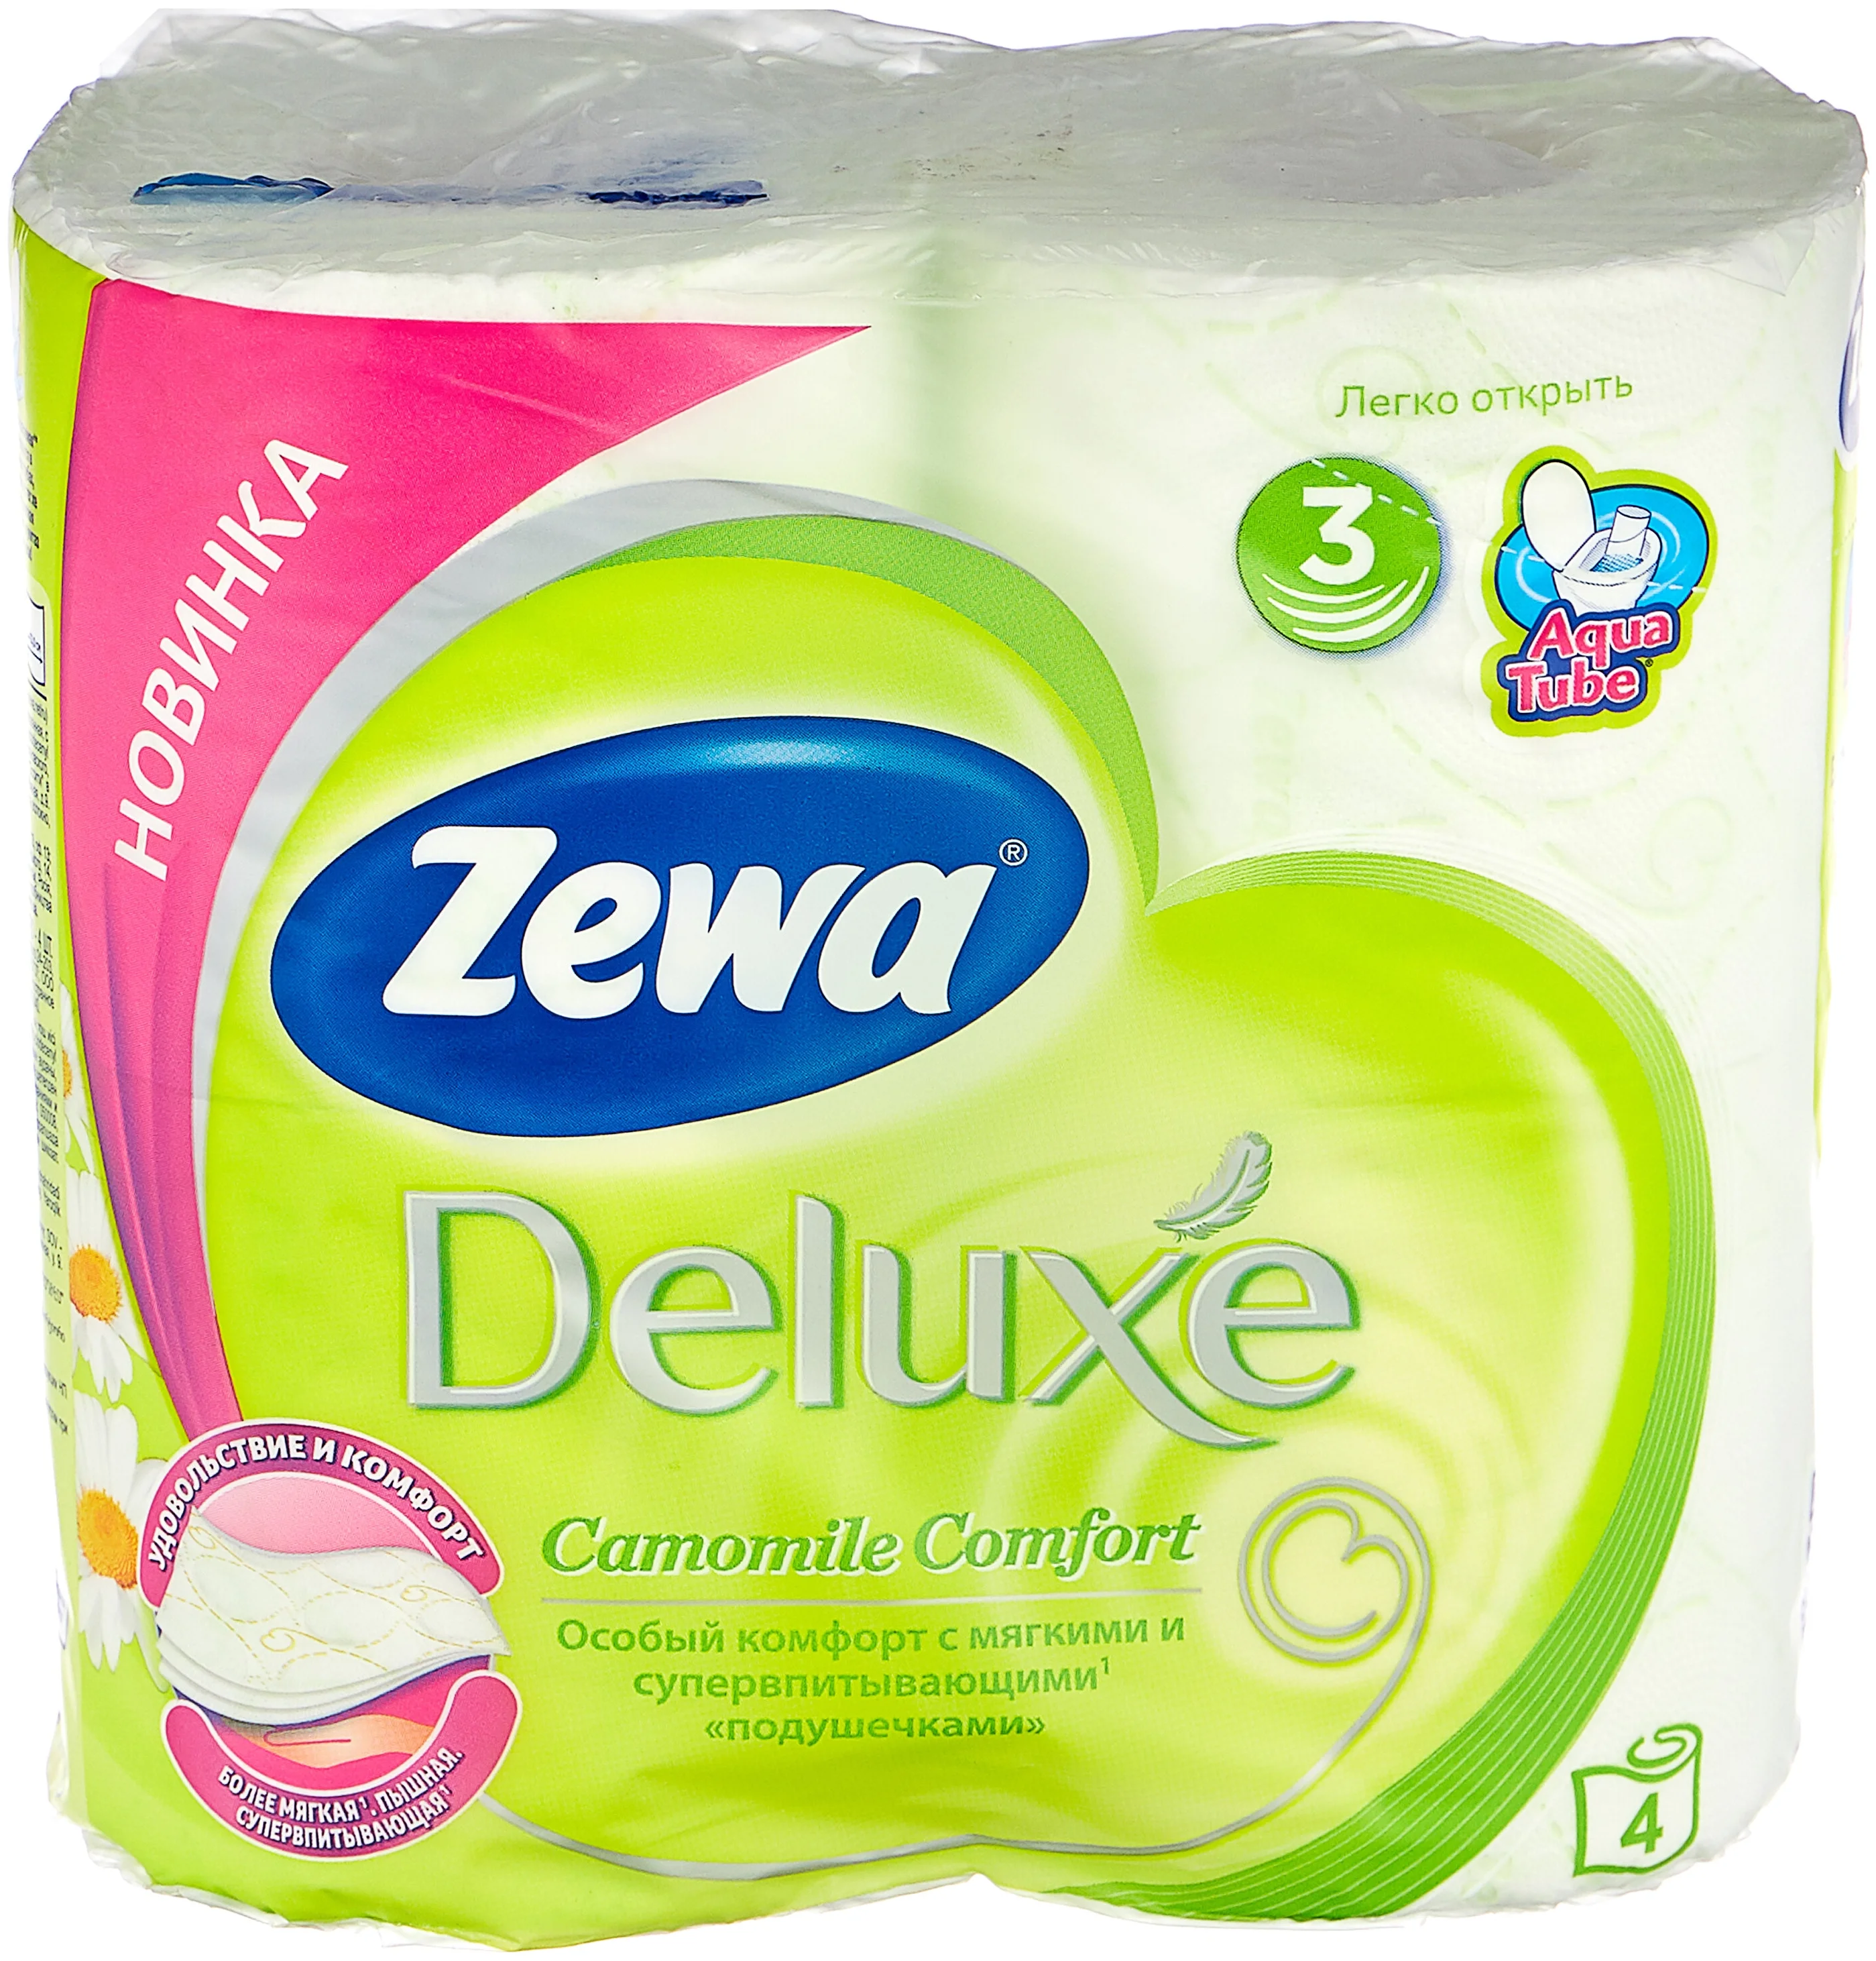 Zewa Deluxe Ромашка - материал: первичная целлюлоза